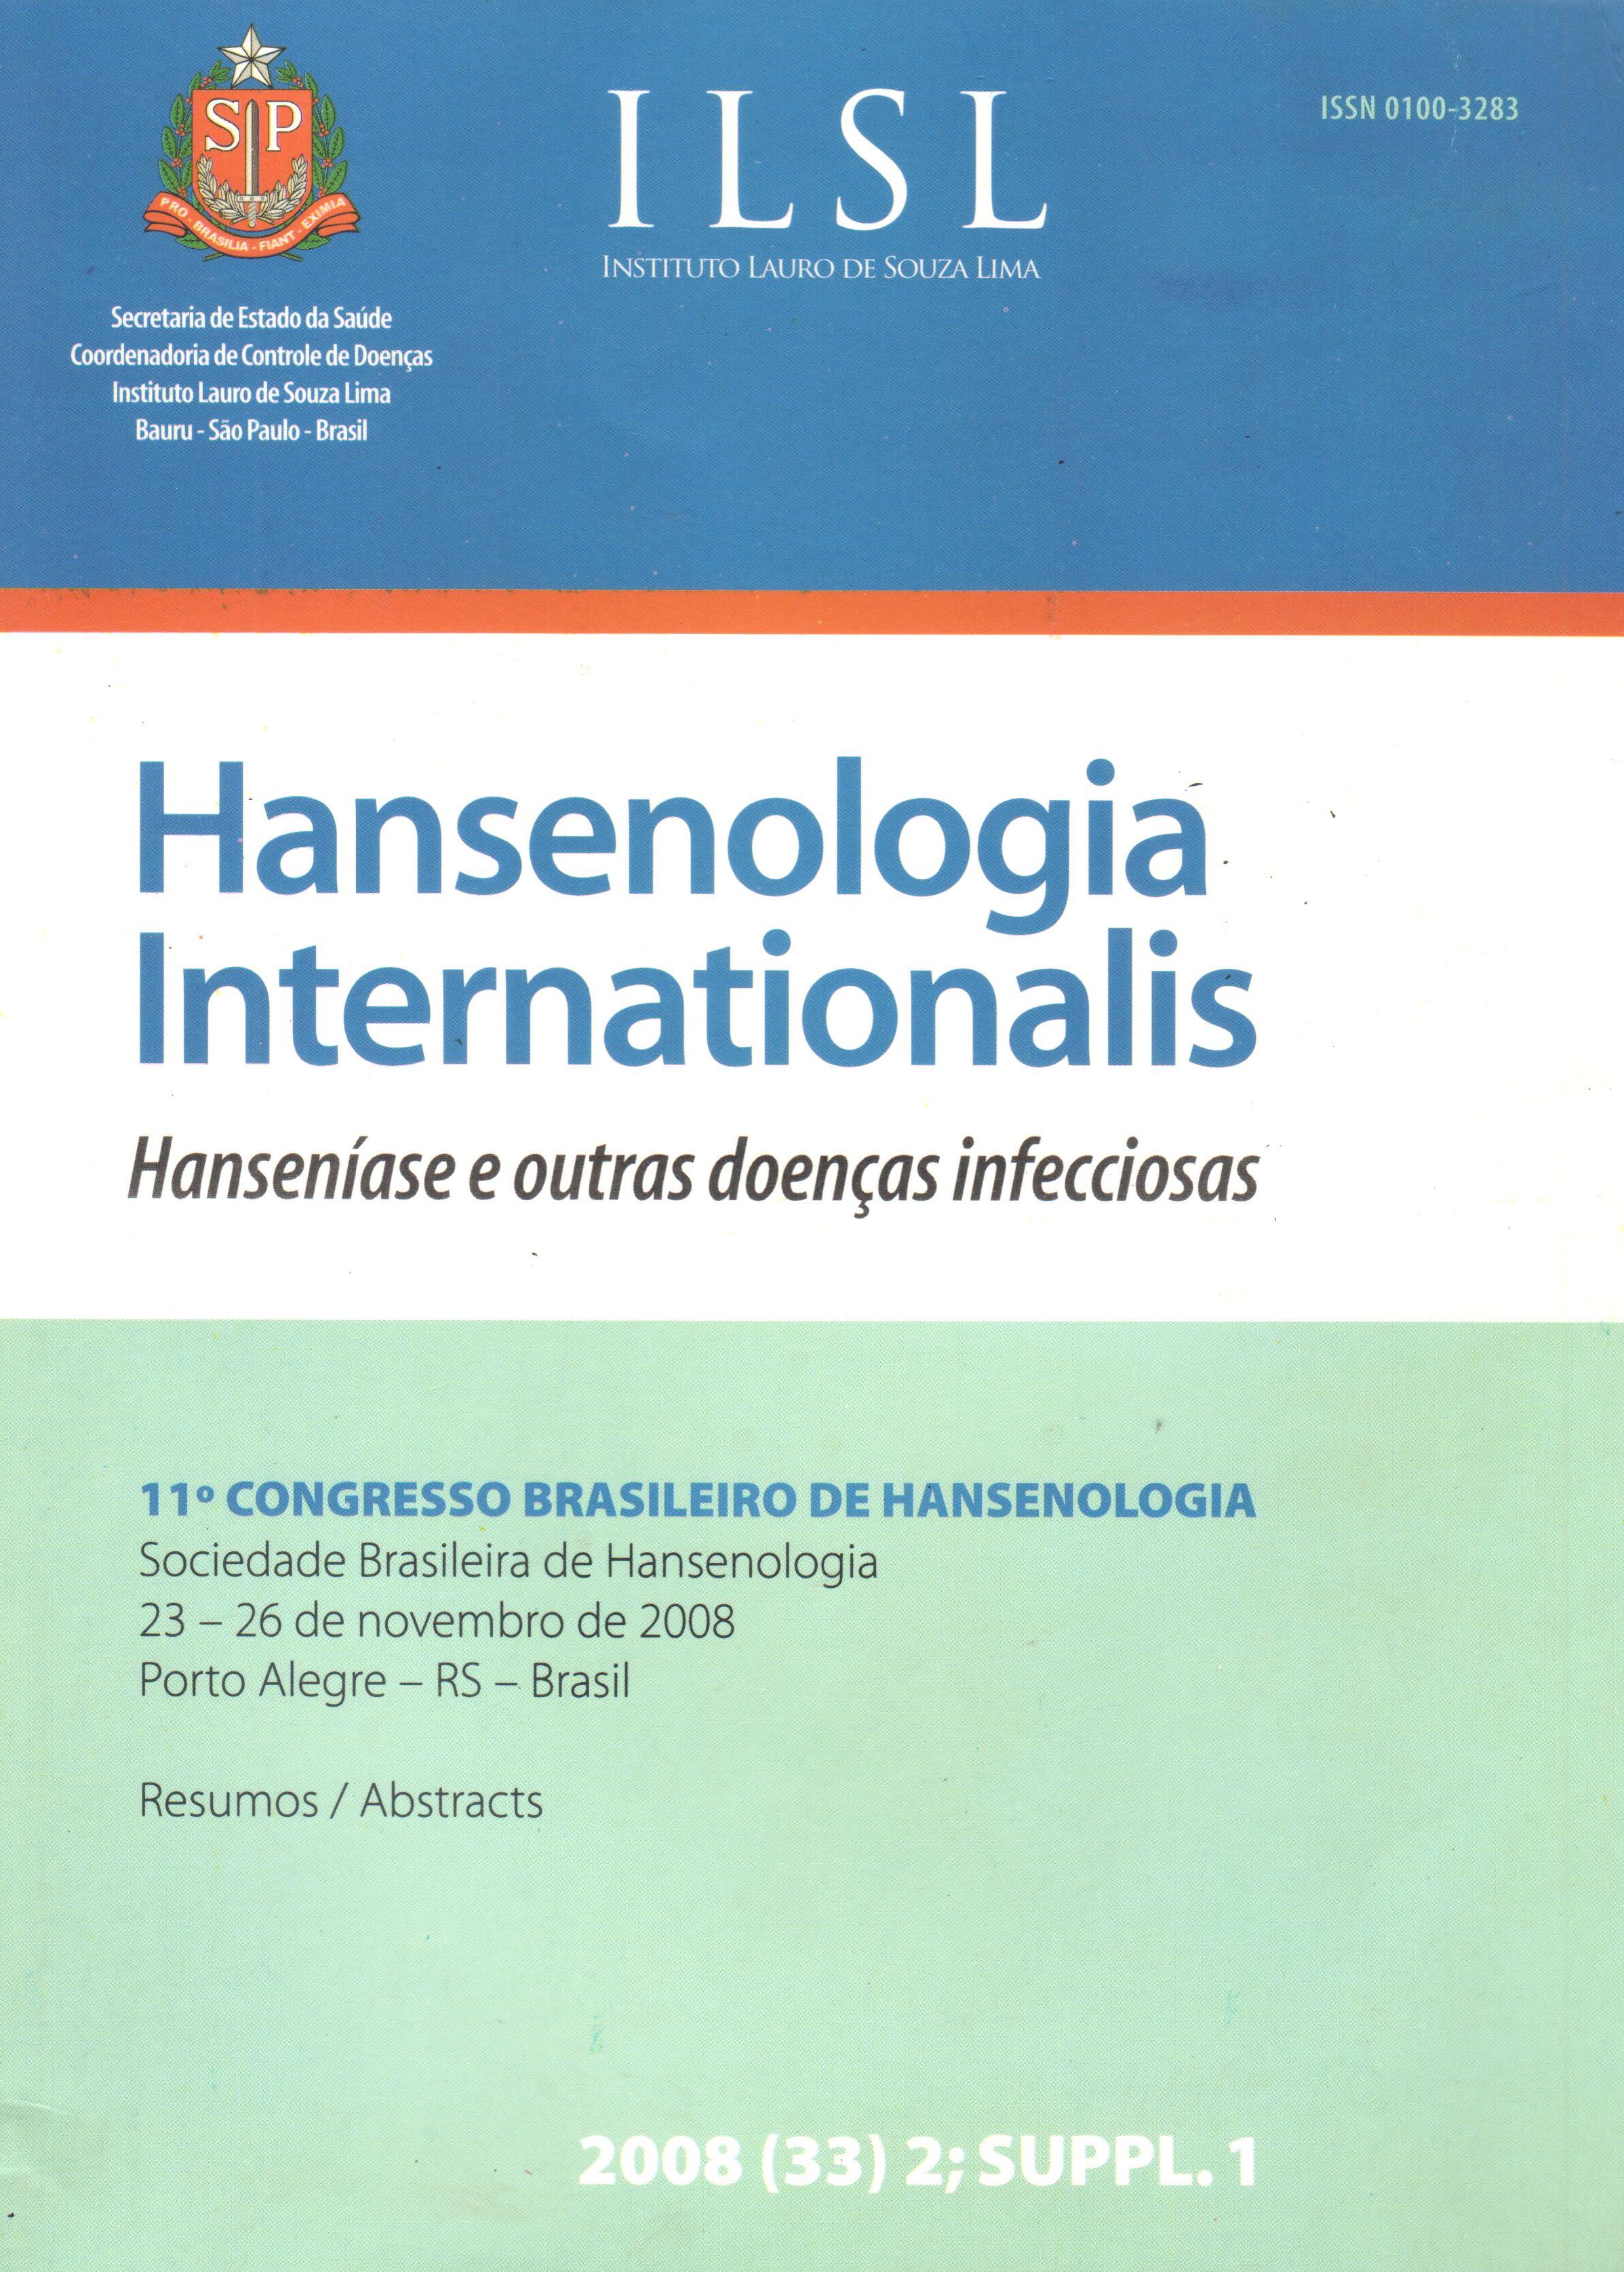 					View Vol. 33 No. Suppl. (2008): 11º Congresso Brasileiro de Hansenologia - Sociedade Brasileira de Hansenologia - 23 a 26 de novembro de 2008 - Porto Alegre - RS - Brasil
				